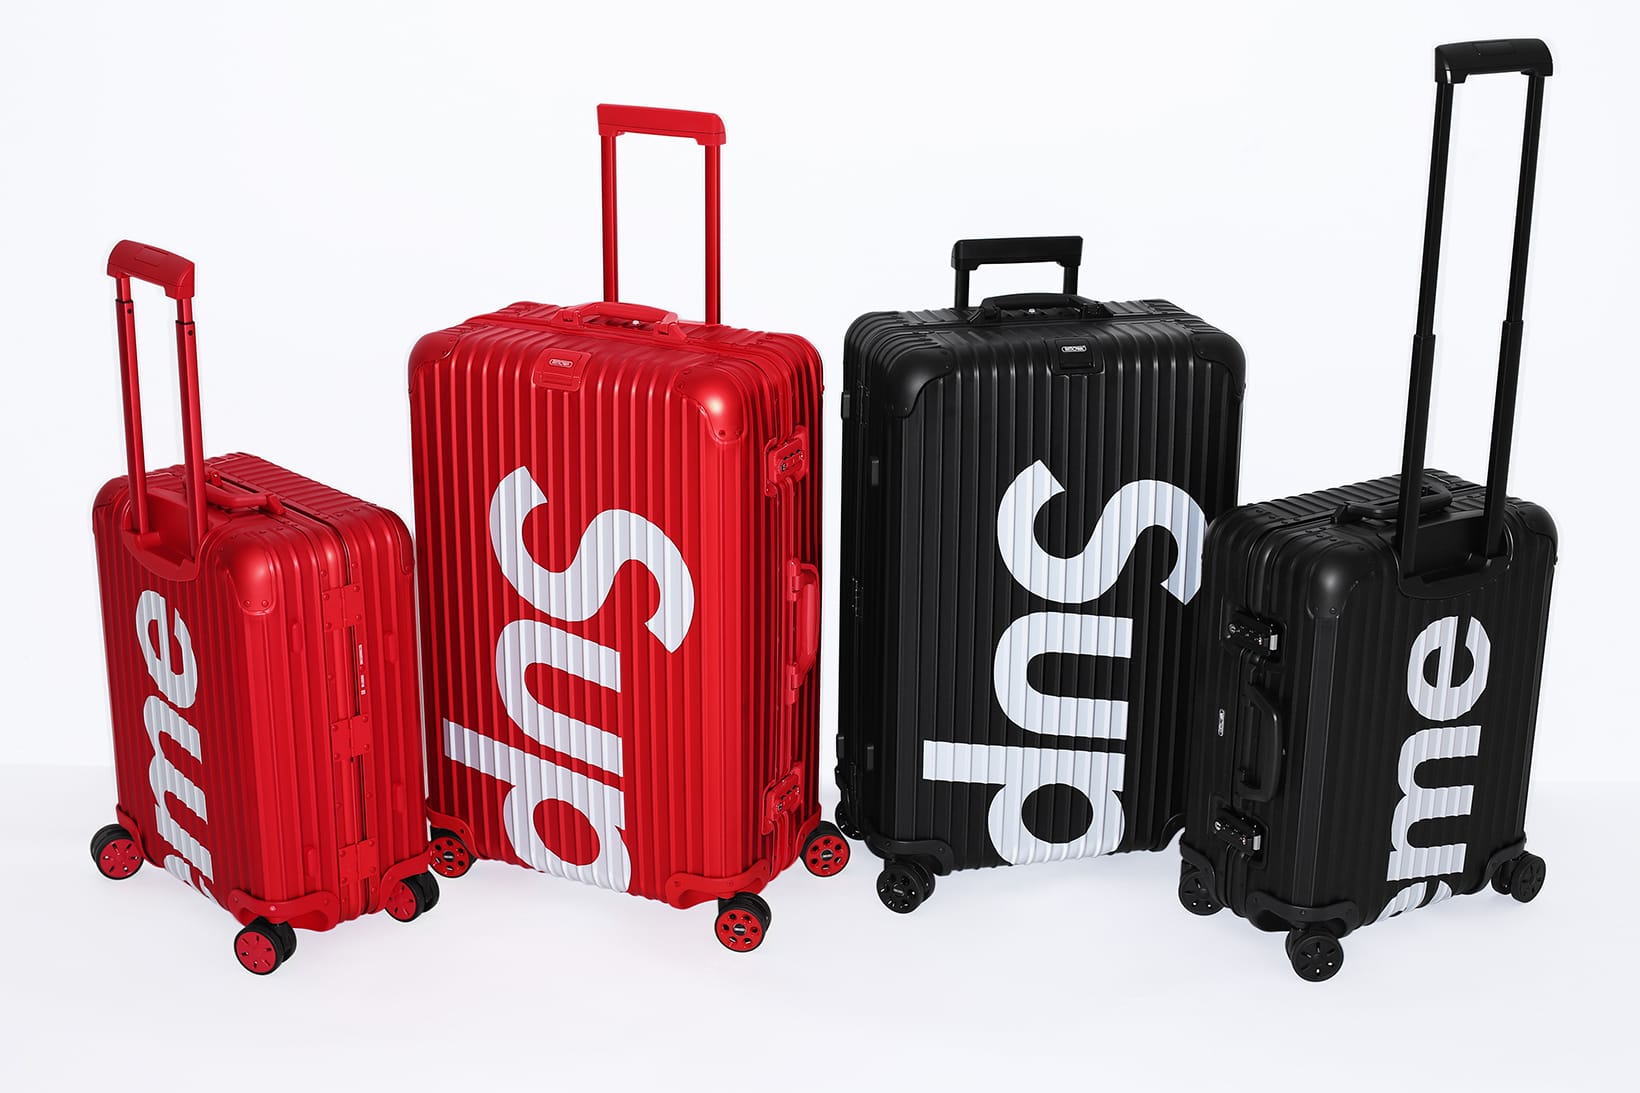 rimowa suitcase price